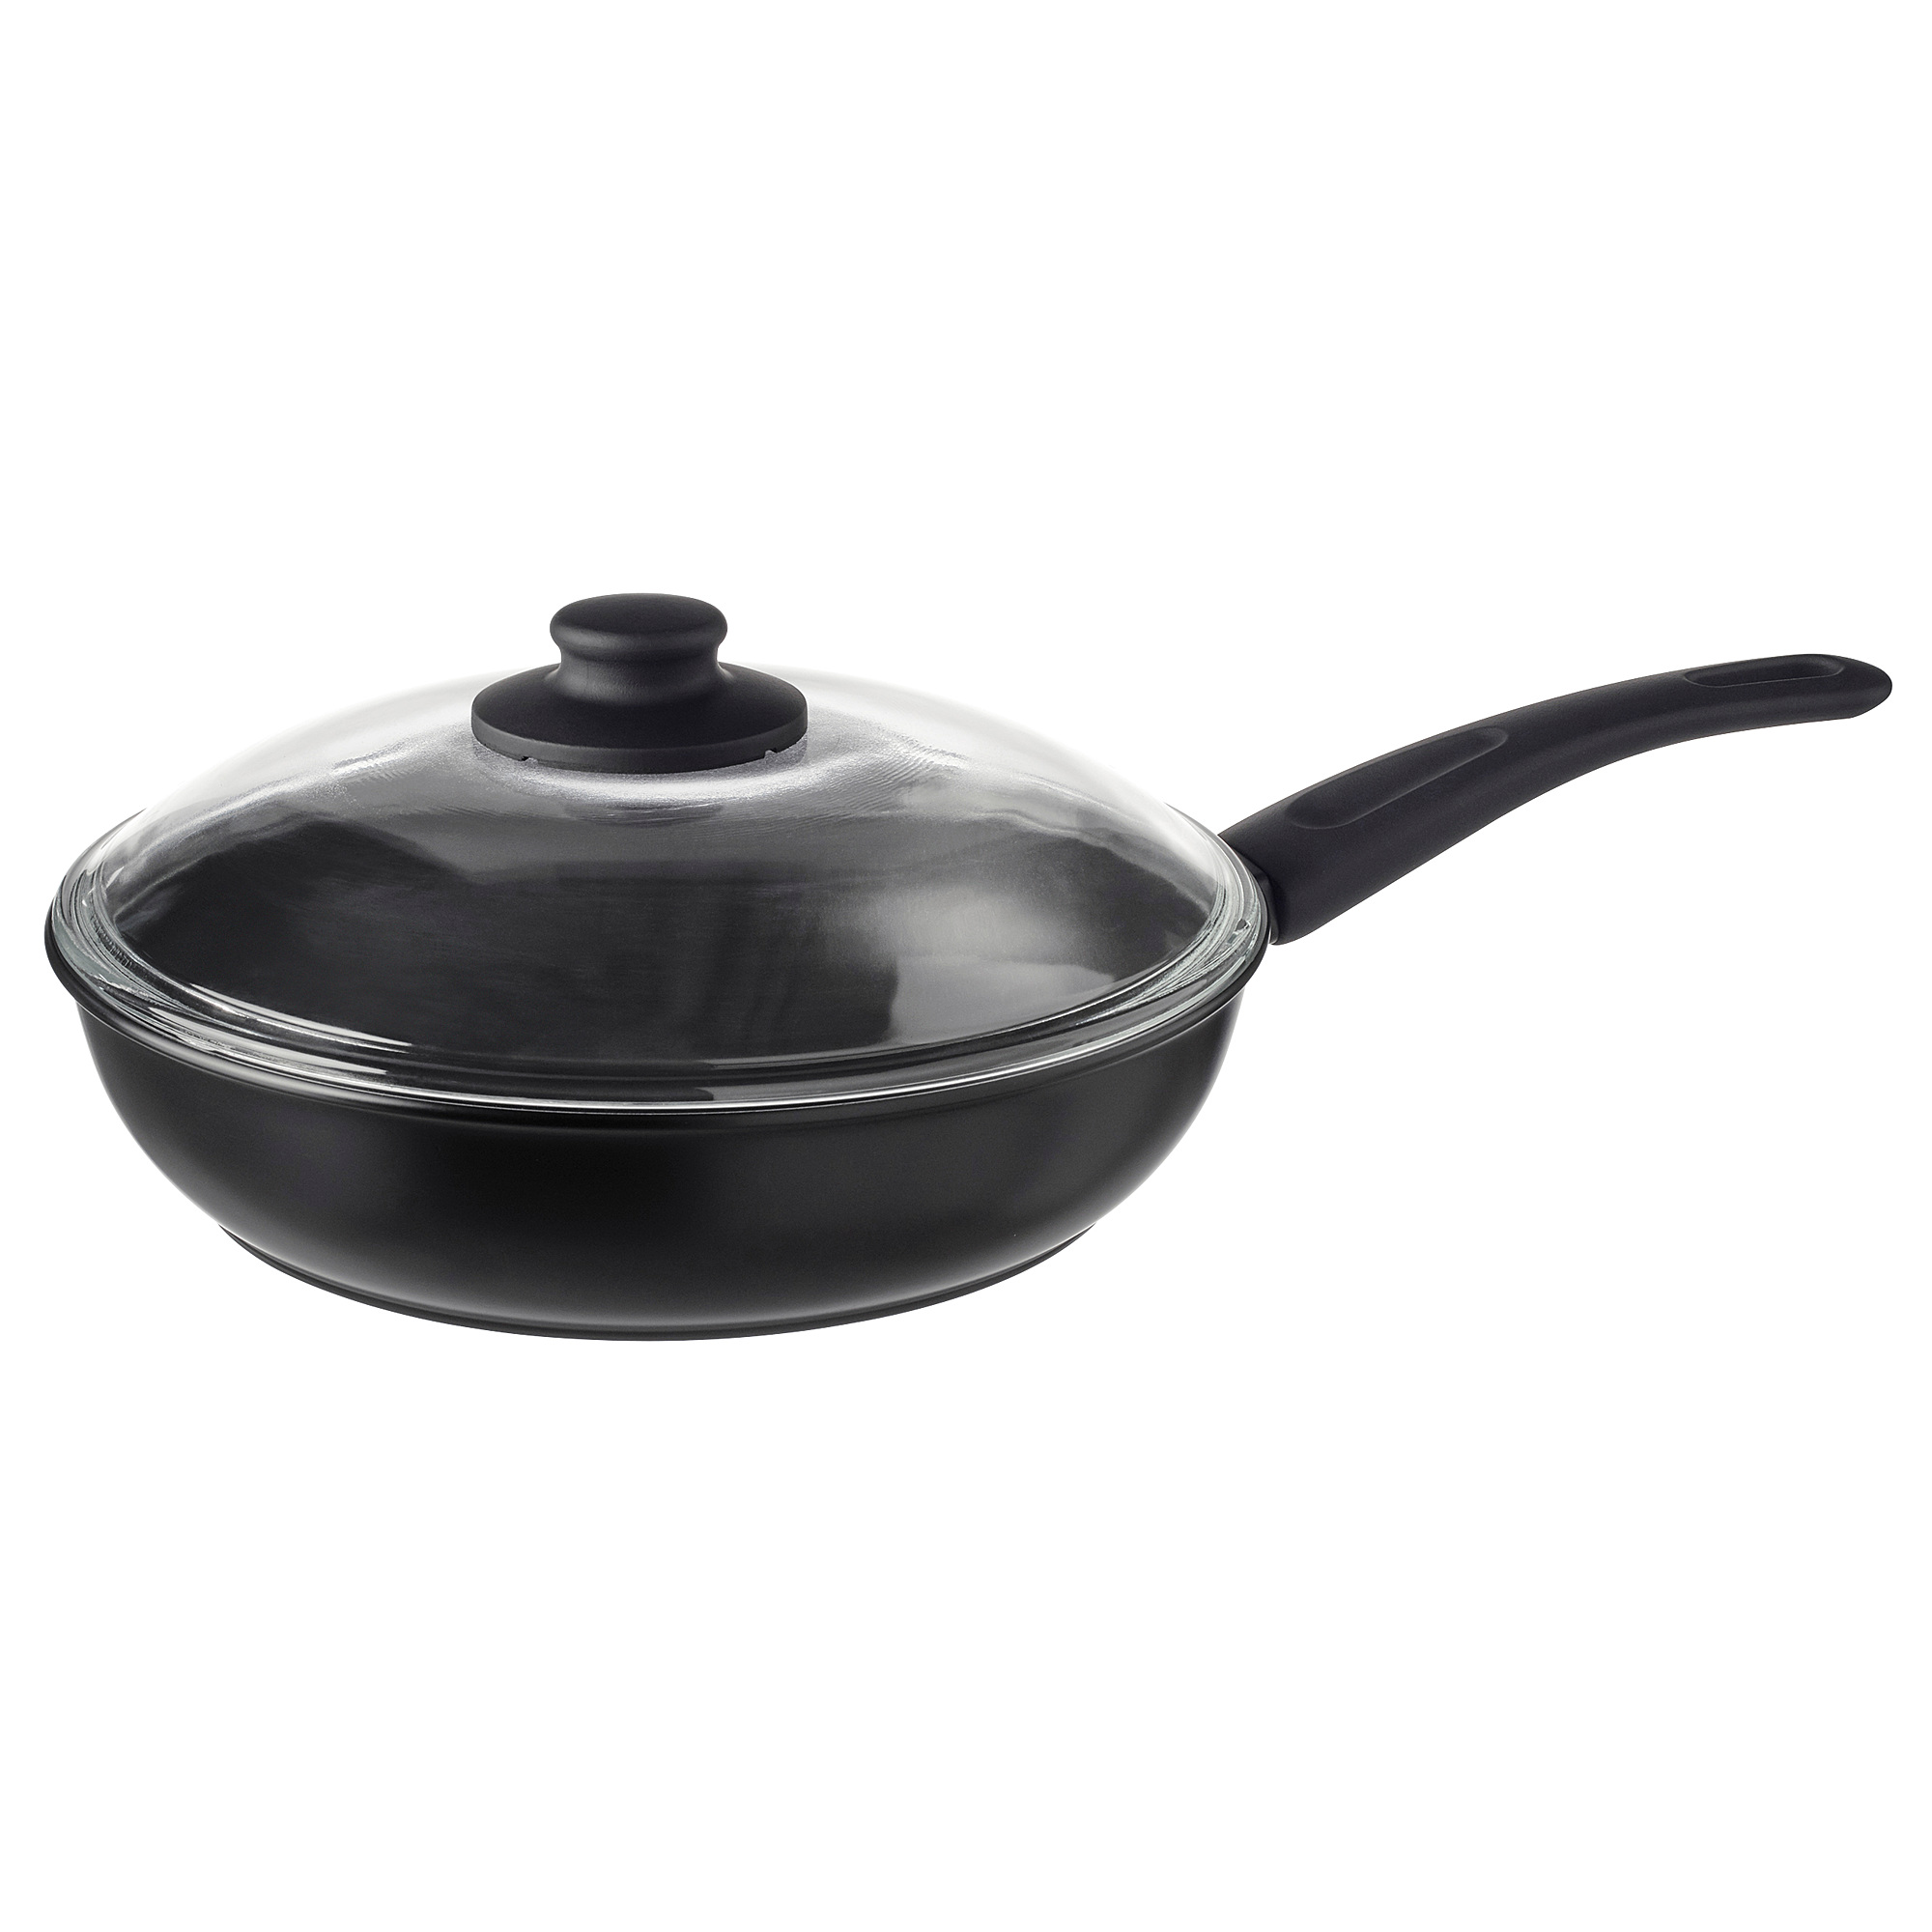 HEMLAGAD sauté pan with lid